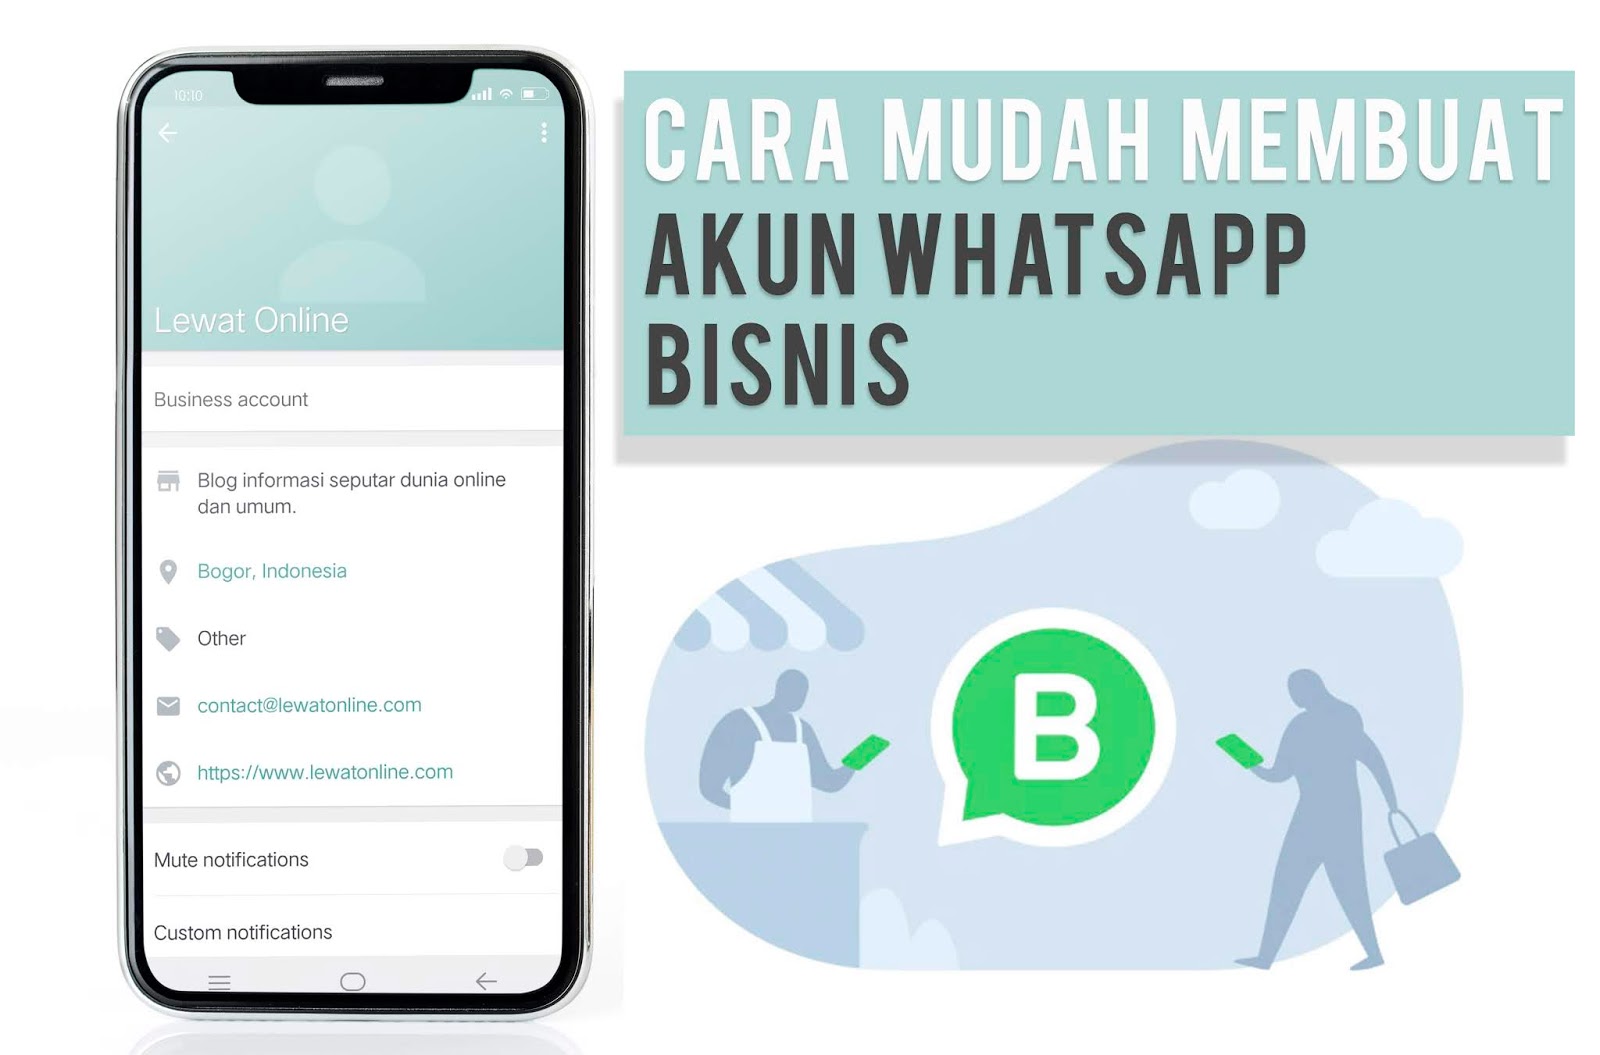 Cara Mudah Membuat Akun WhatsApp Bisnis - LewatOnline.com - Media